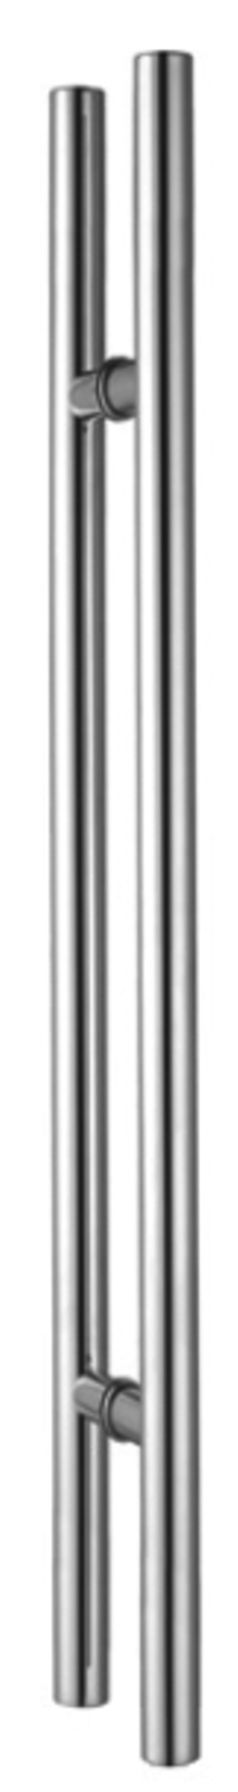 A-633 ручка двухсторонняя 38х1200 (900) PSS